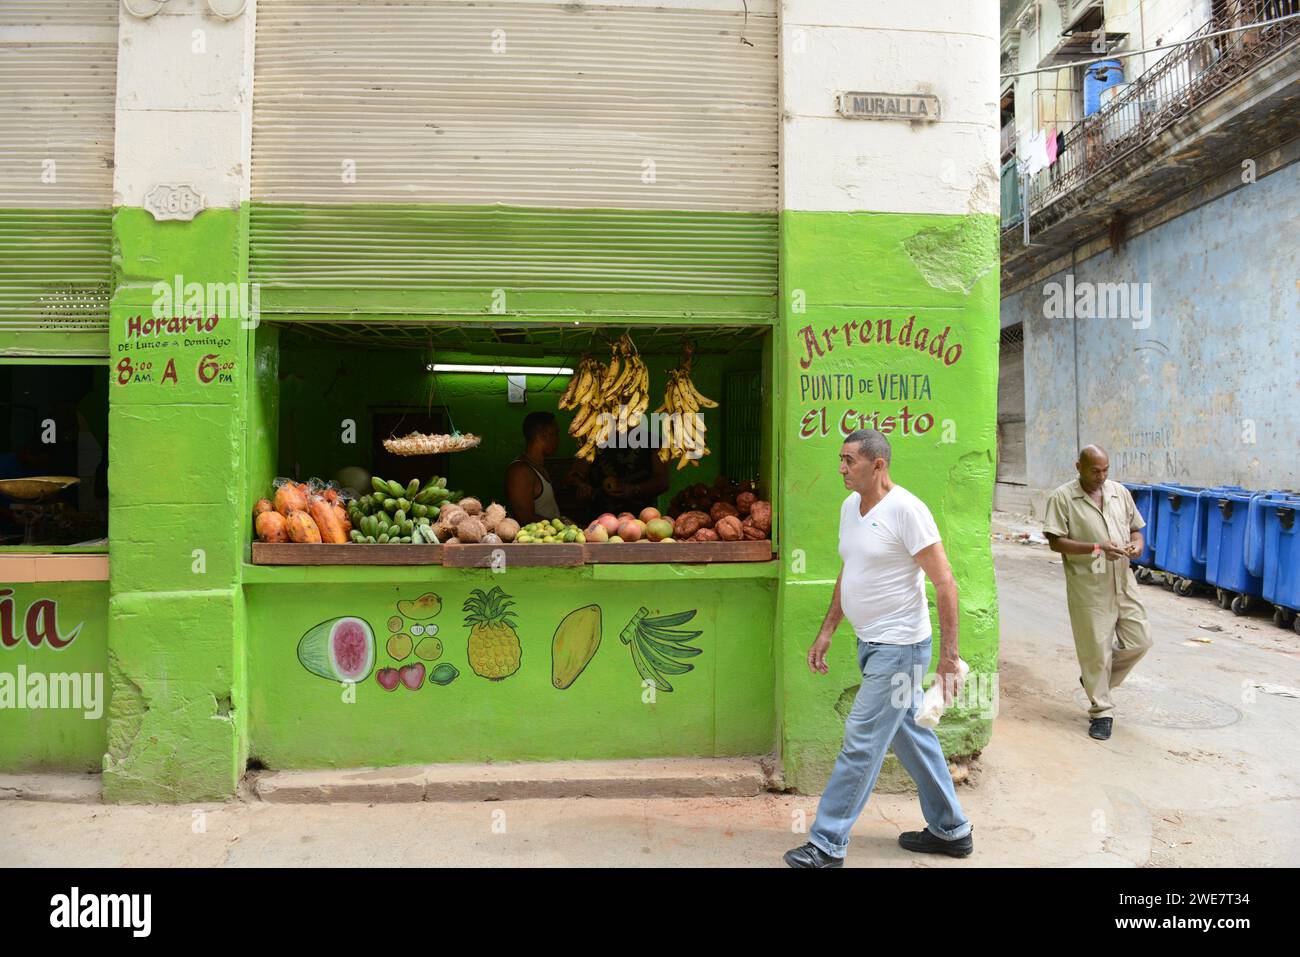 Un variopinto negozio di frutta e verdura in via Muralla nella vecchia Havana, Cuba. Foto Stock